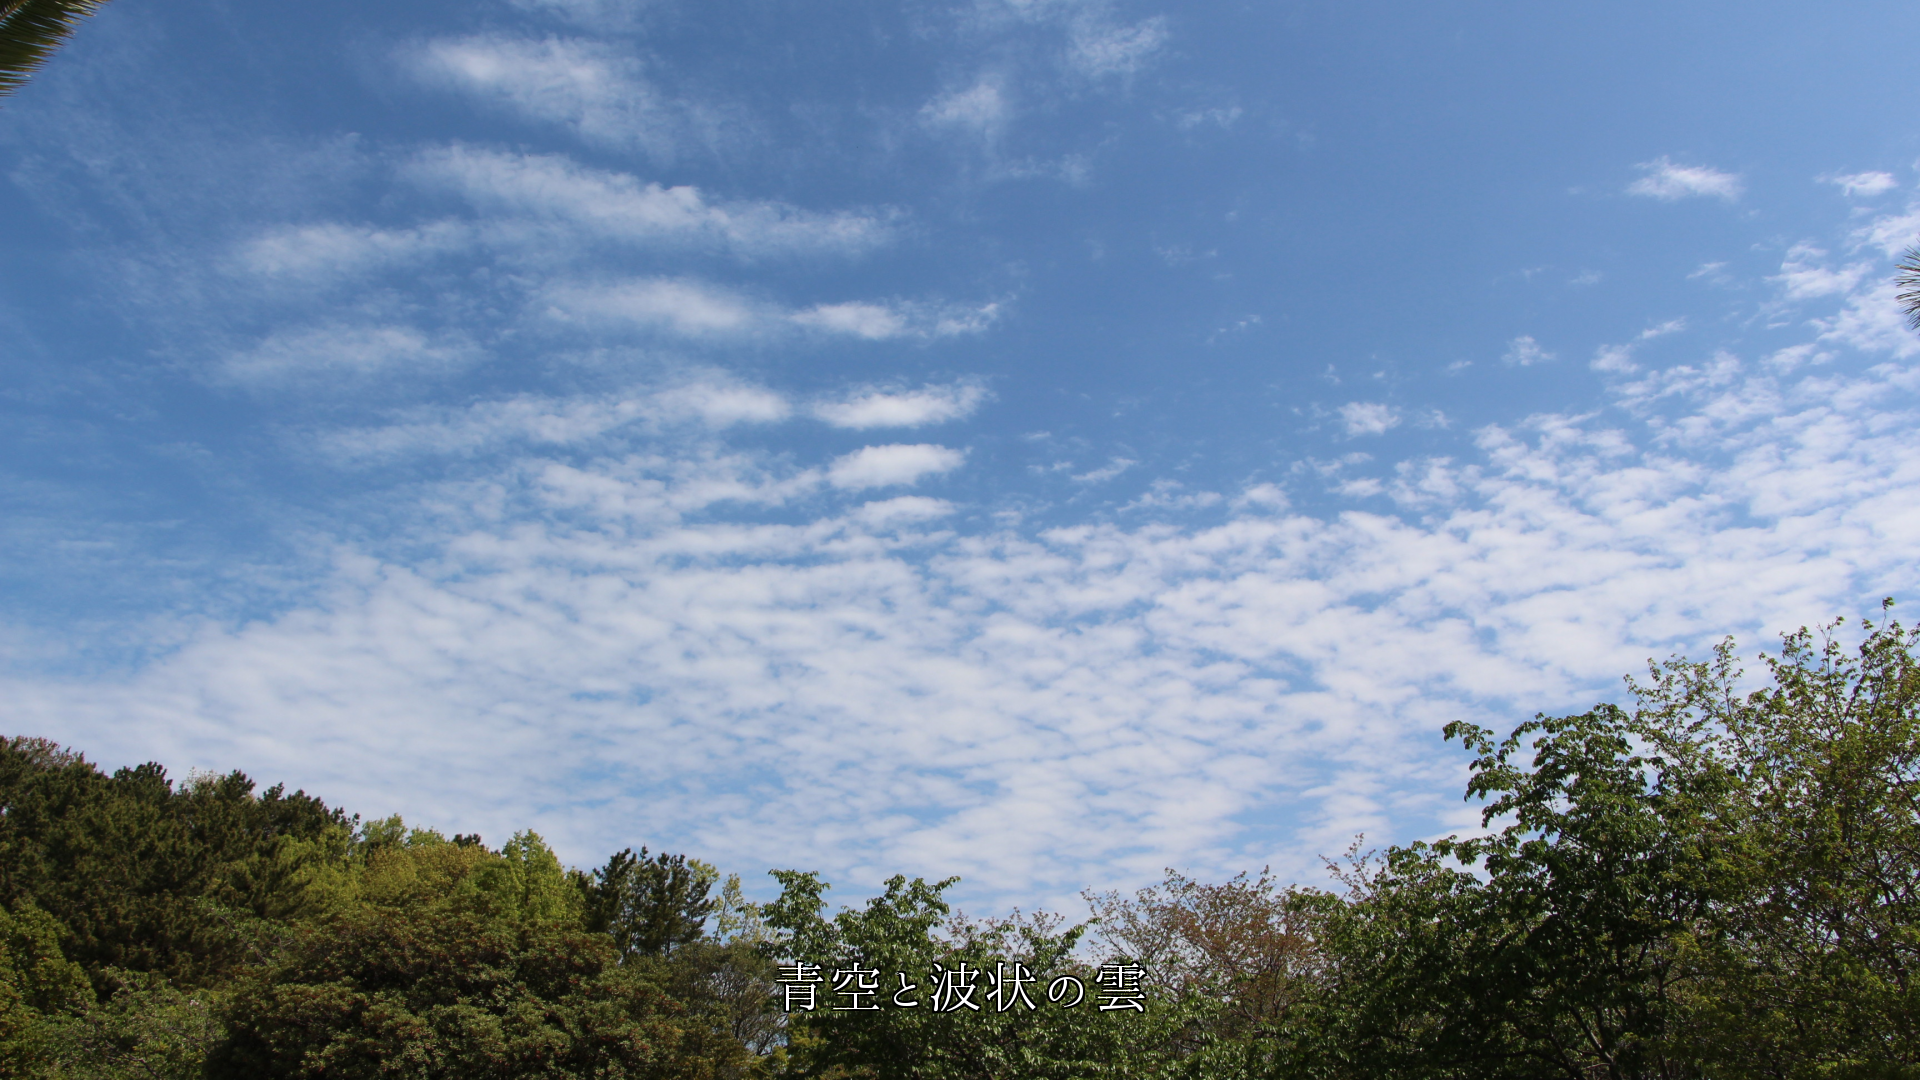 いろいろな姿の雲がある　青空が似合い　時間と共に色も変わってゆく　